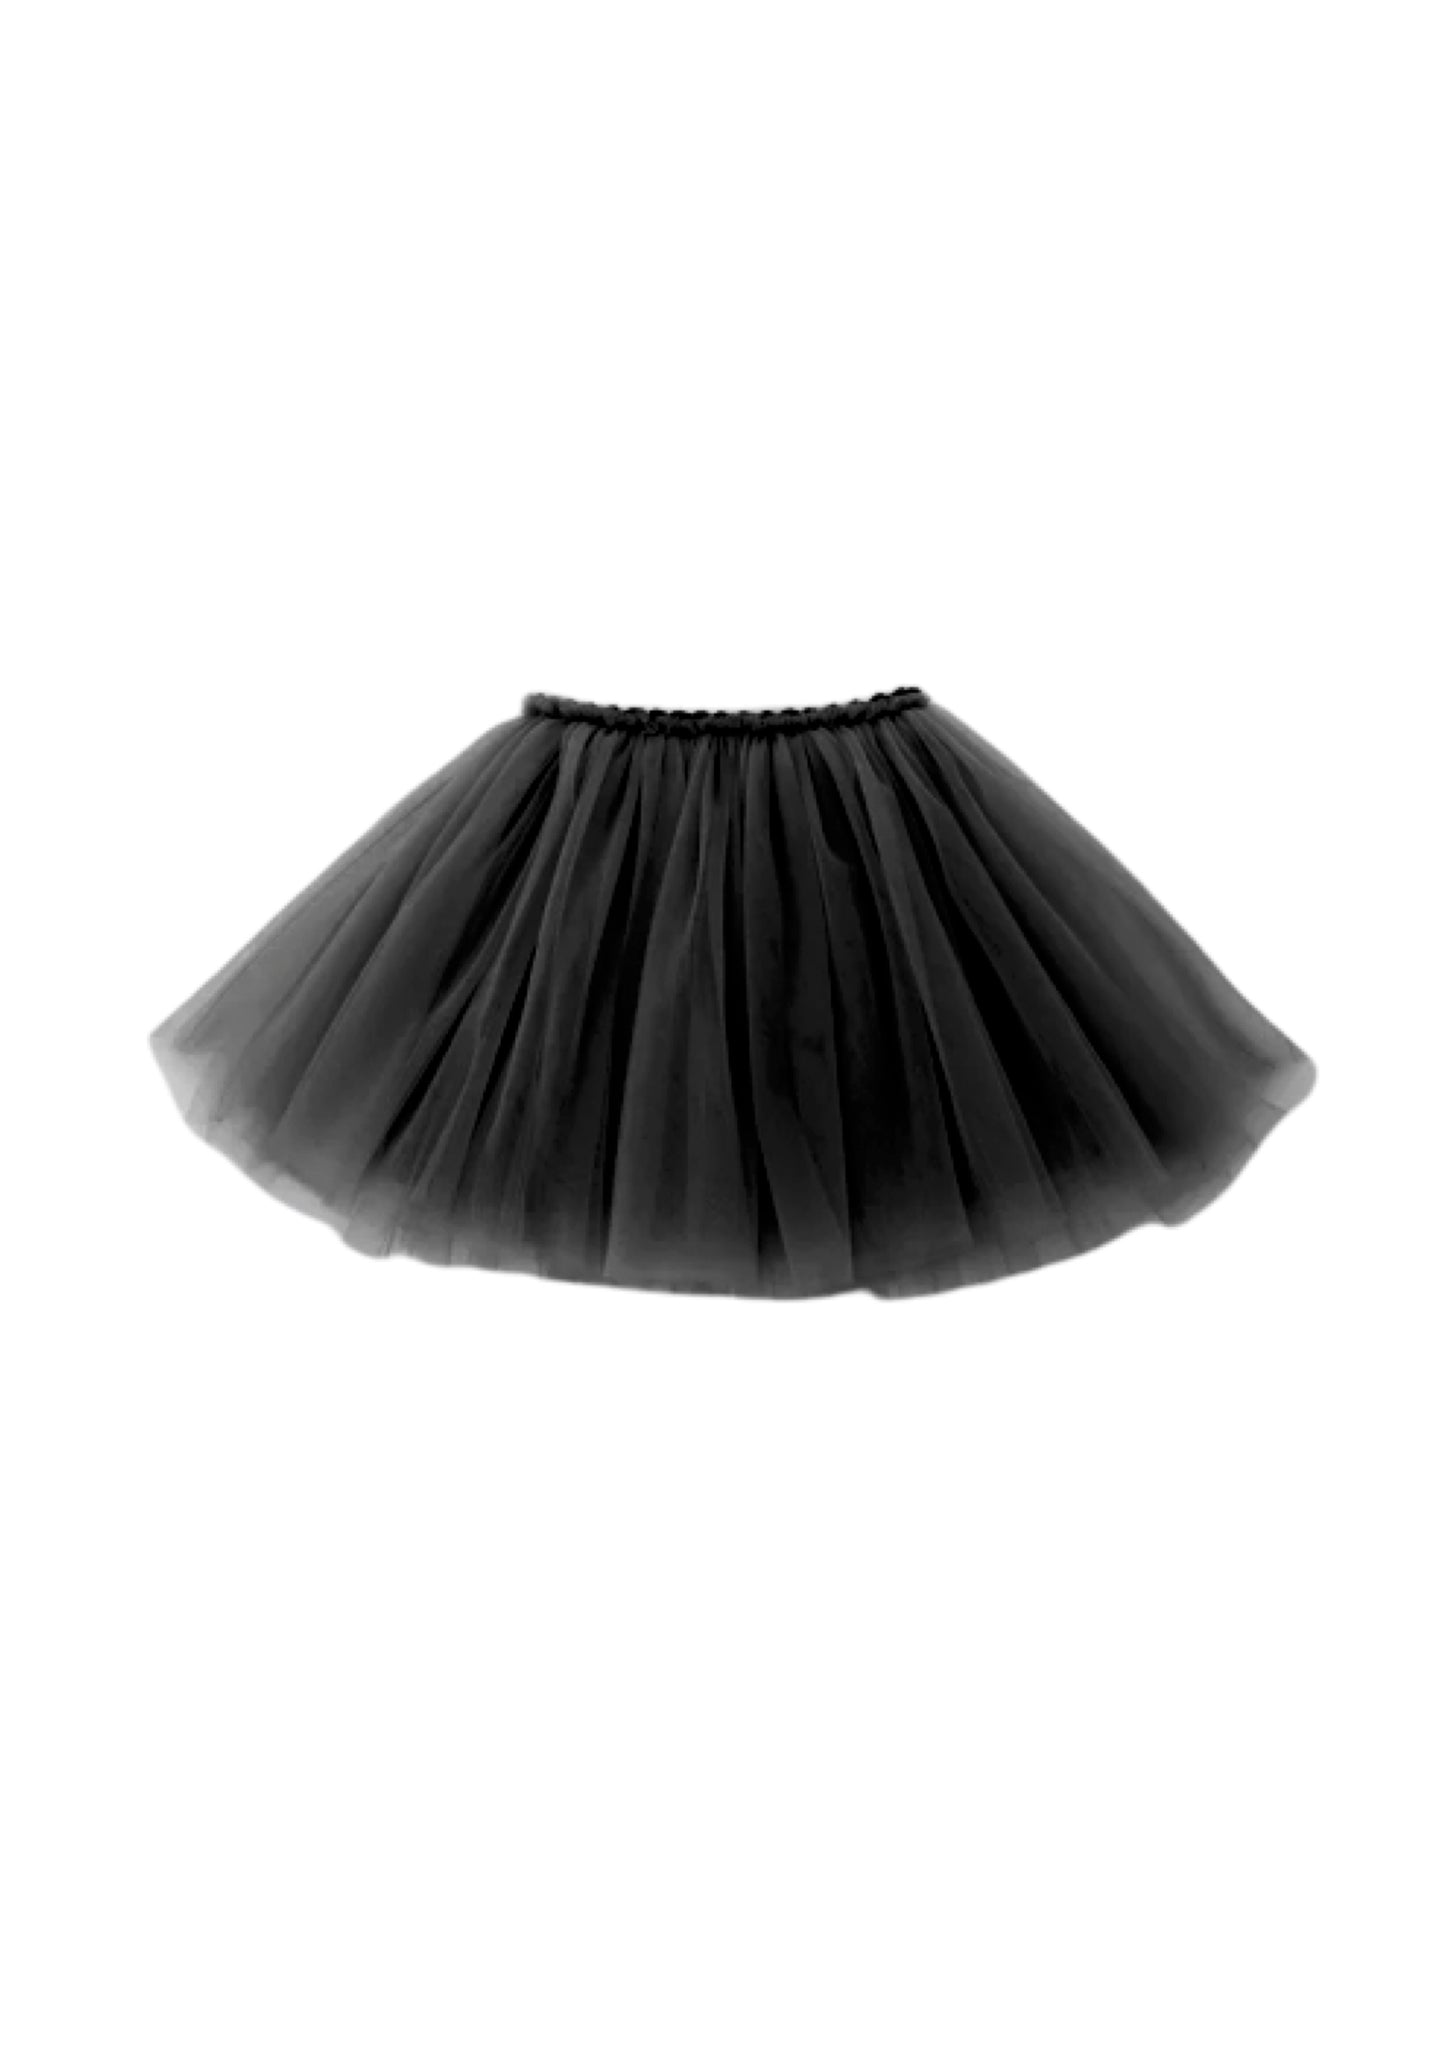 Skirt | LITTLE TUTU black